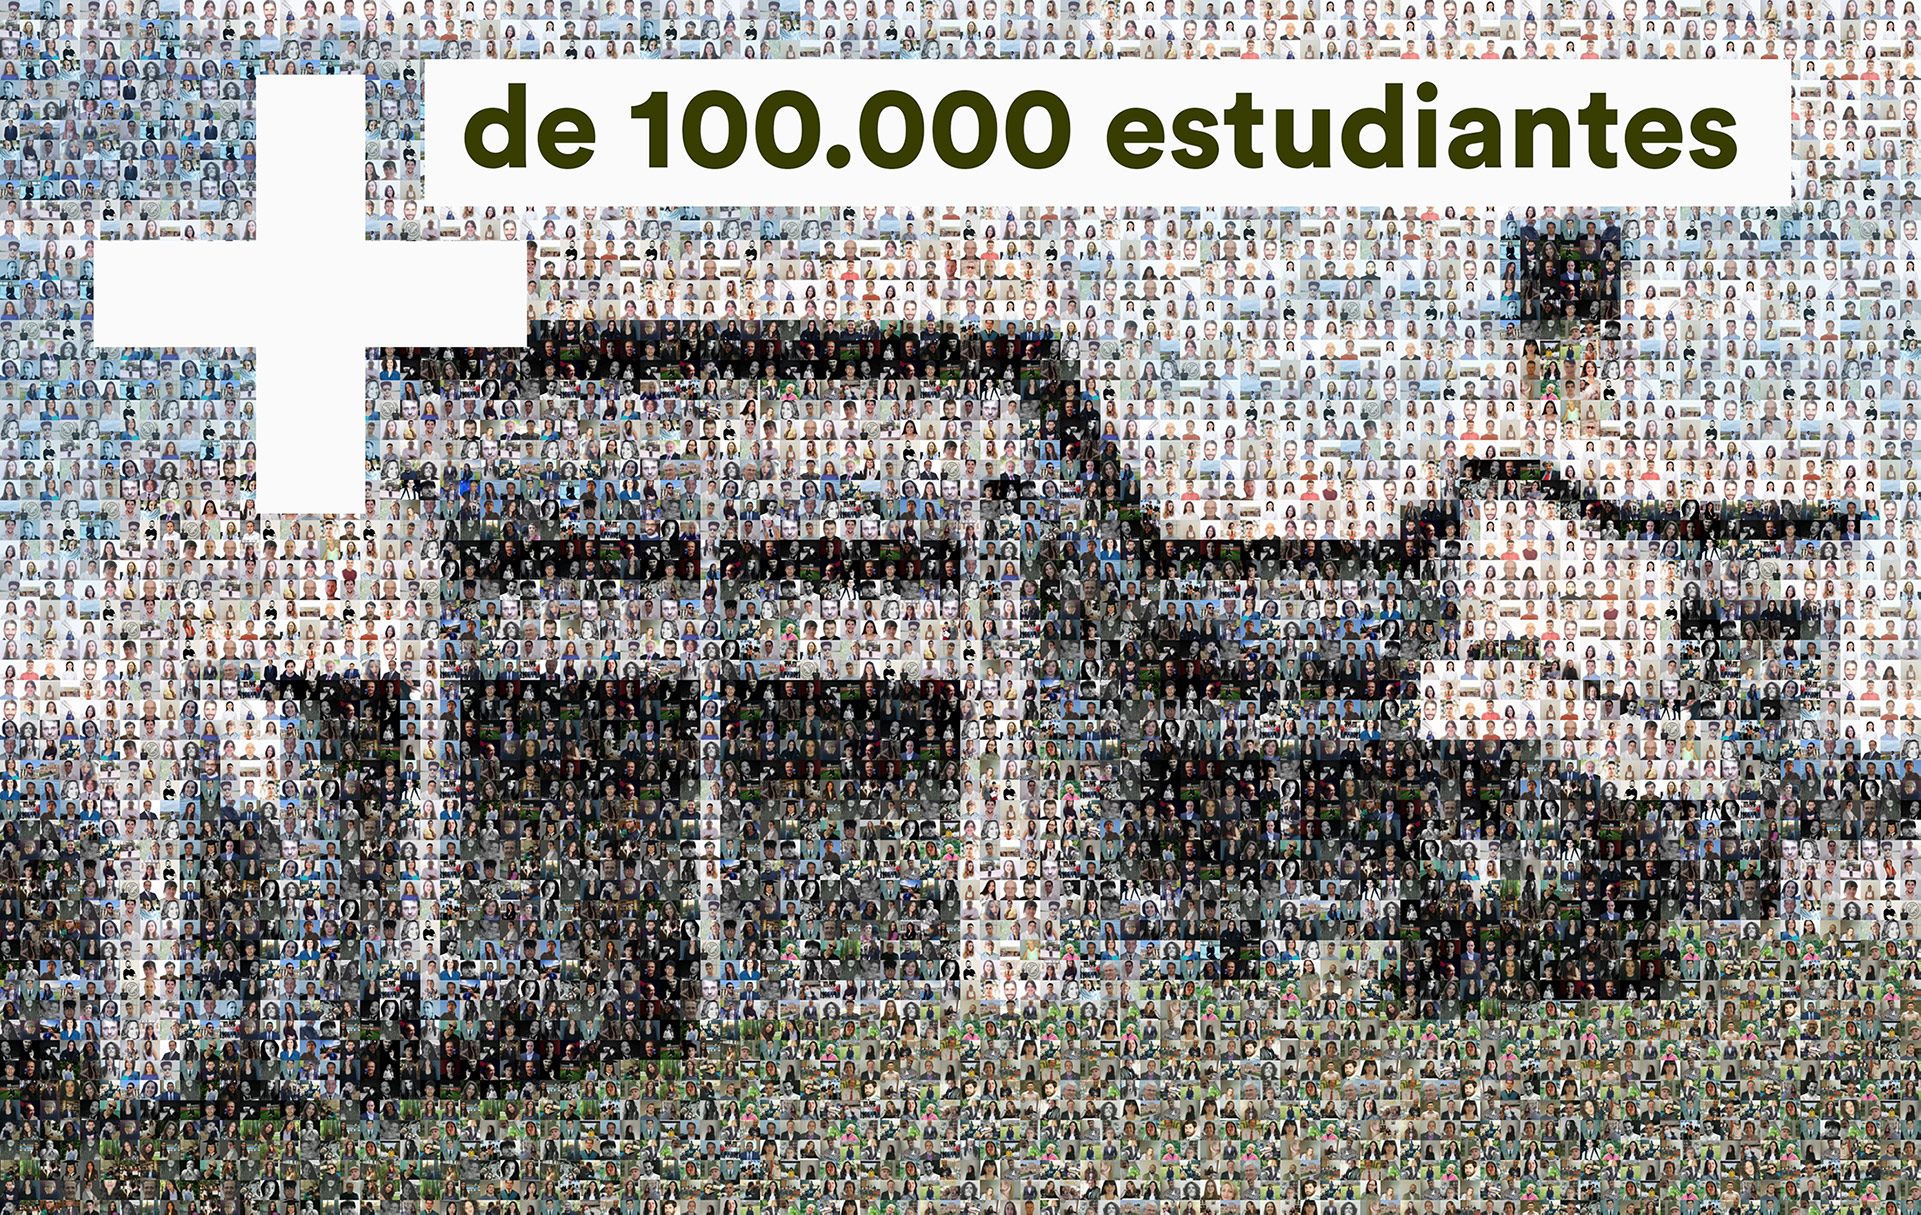 Ya son más de 100.000 estudiantes los que han pasado por la Facultad de Ciencias de la Información desde 1971 - 1